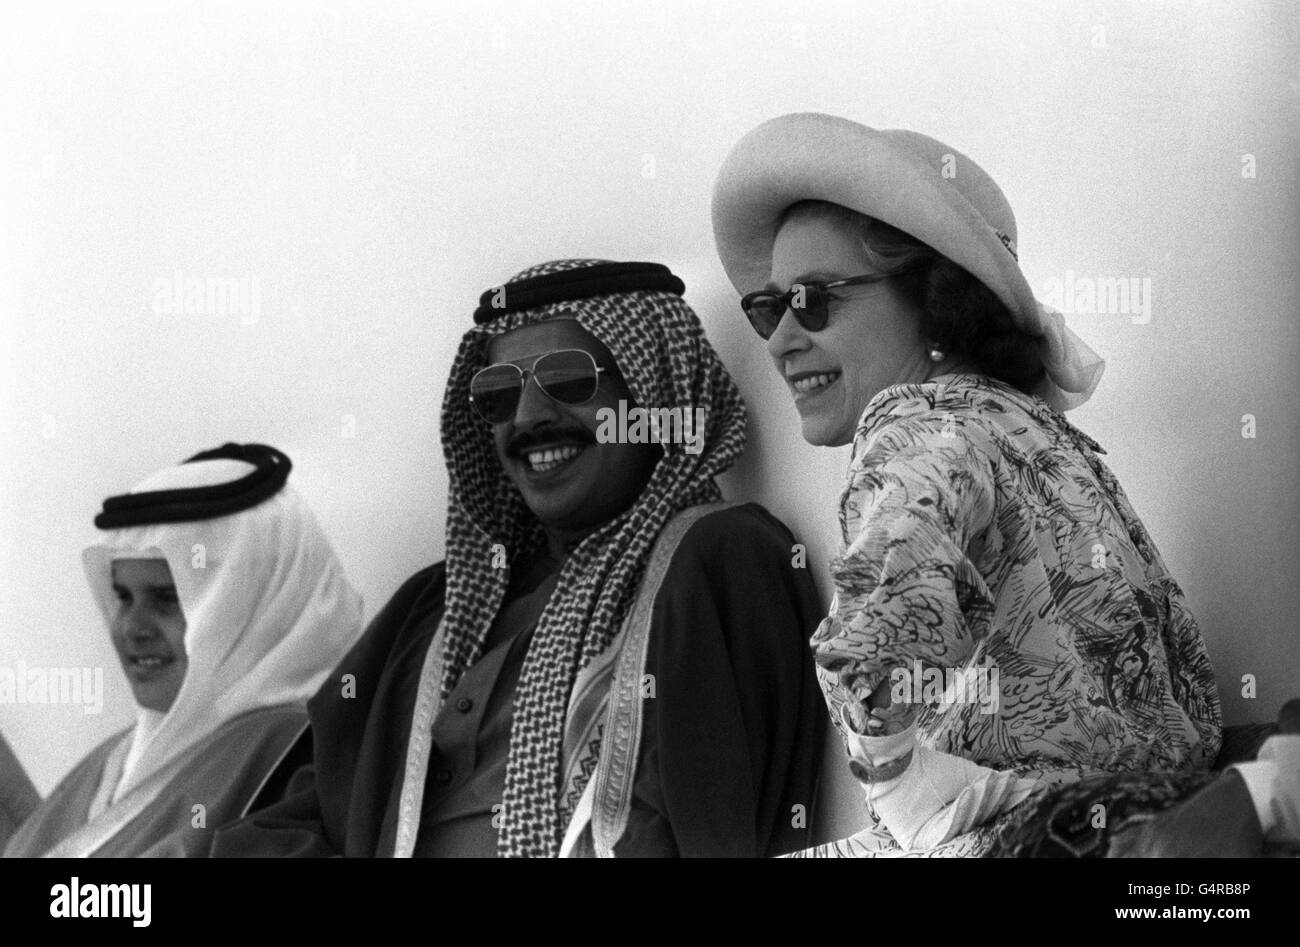 Regina Elisabetta II con Sheikh Ahmed bin Isa al-Khalifa alle gare in Bahrain. L'Emir è rigorosamente anti-scommettere e ha il suo modo di scoraggiare i pugni - cambia il numero su tutti i cavalli poco prima dell'inizio della gara. Ma quando la Regina visitò, non furono apportate modifiche. Foto Stock